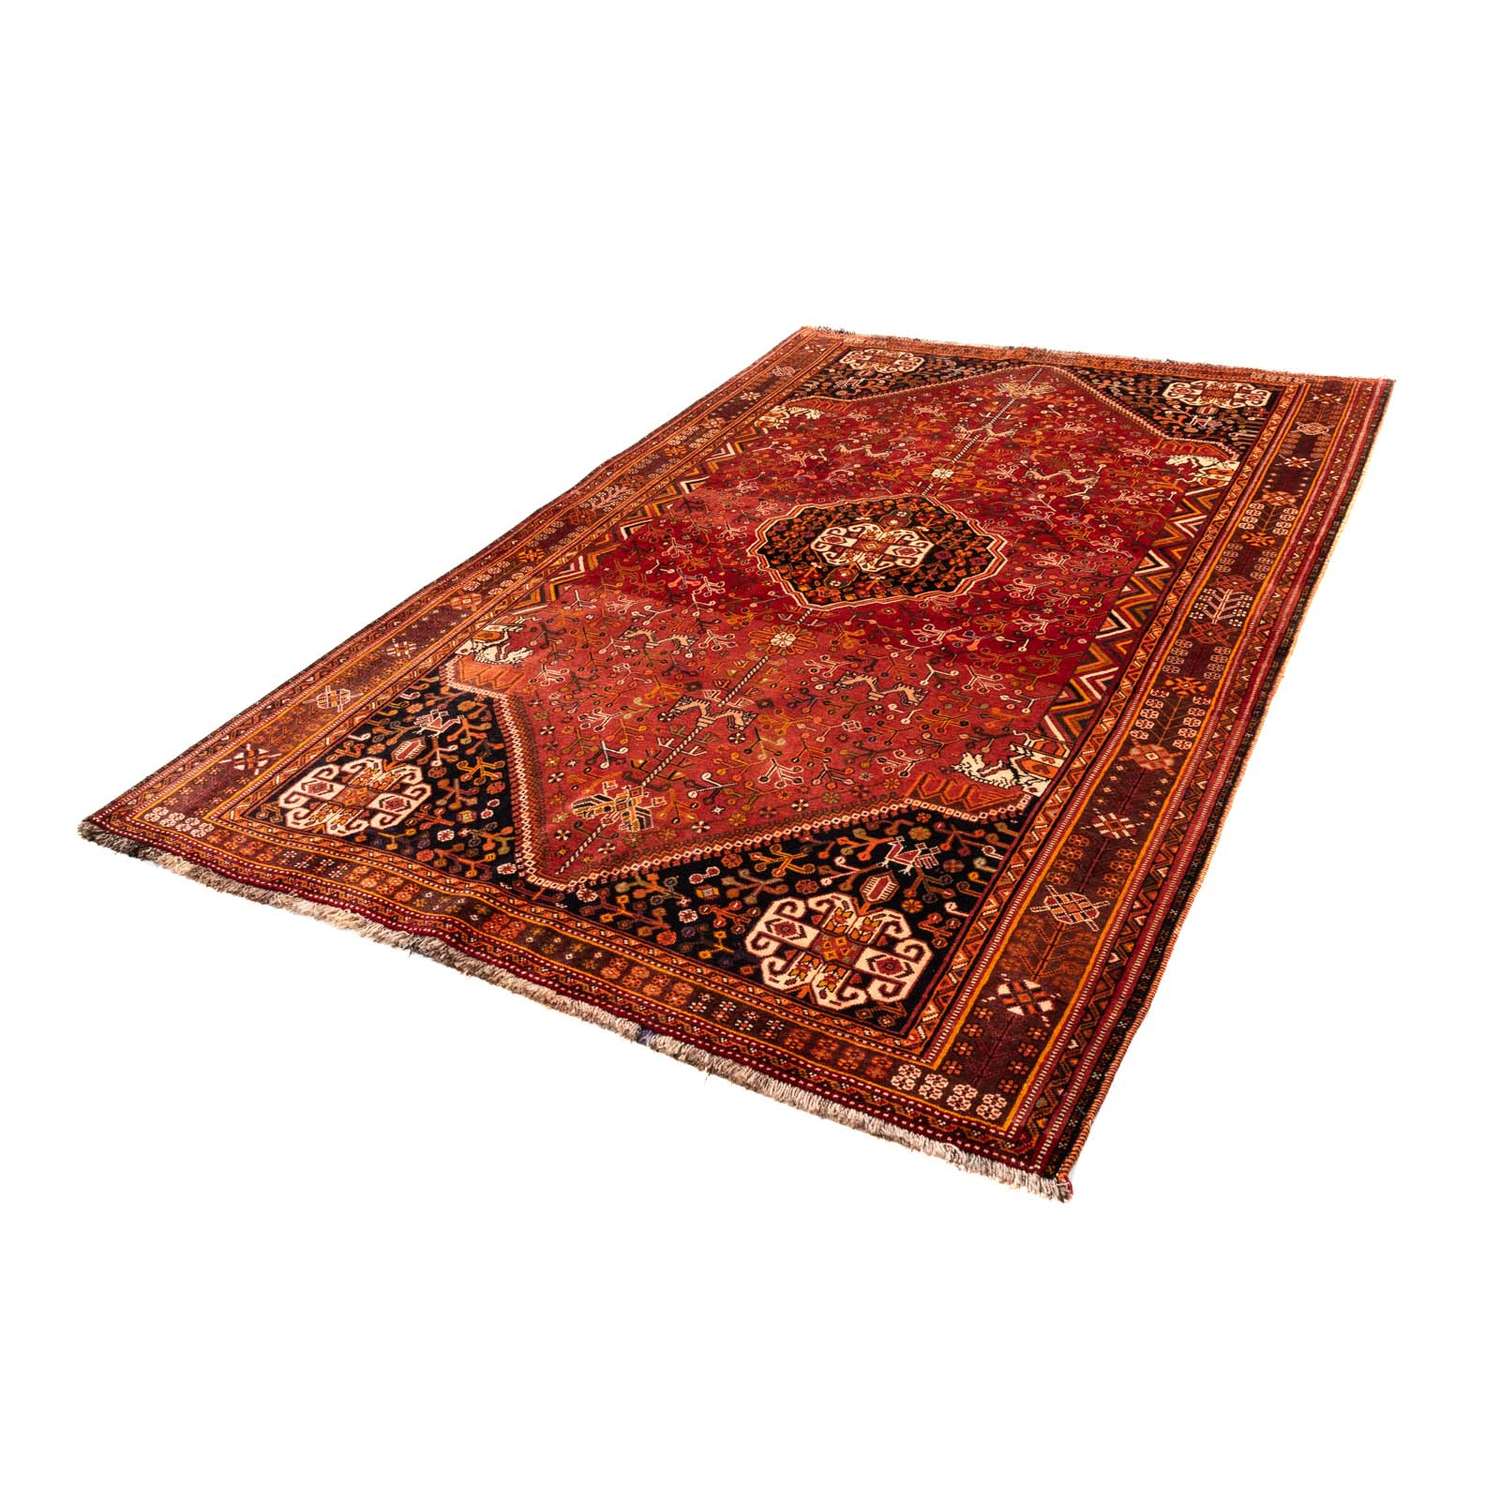 Persisk teppe - Nomadisk - 255 x 162 cm - rød